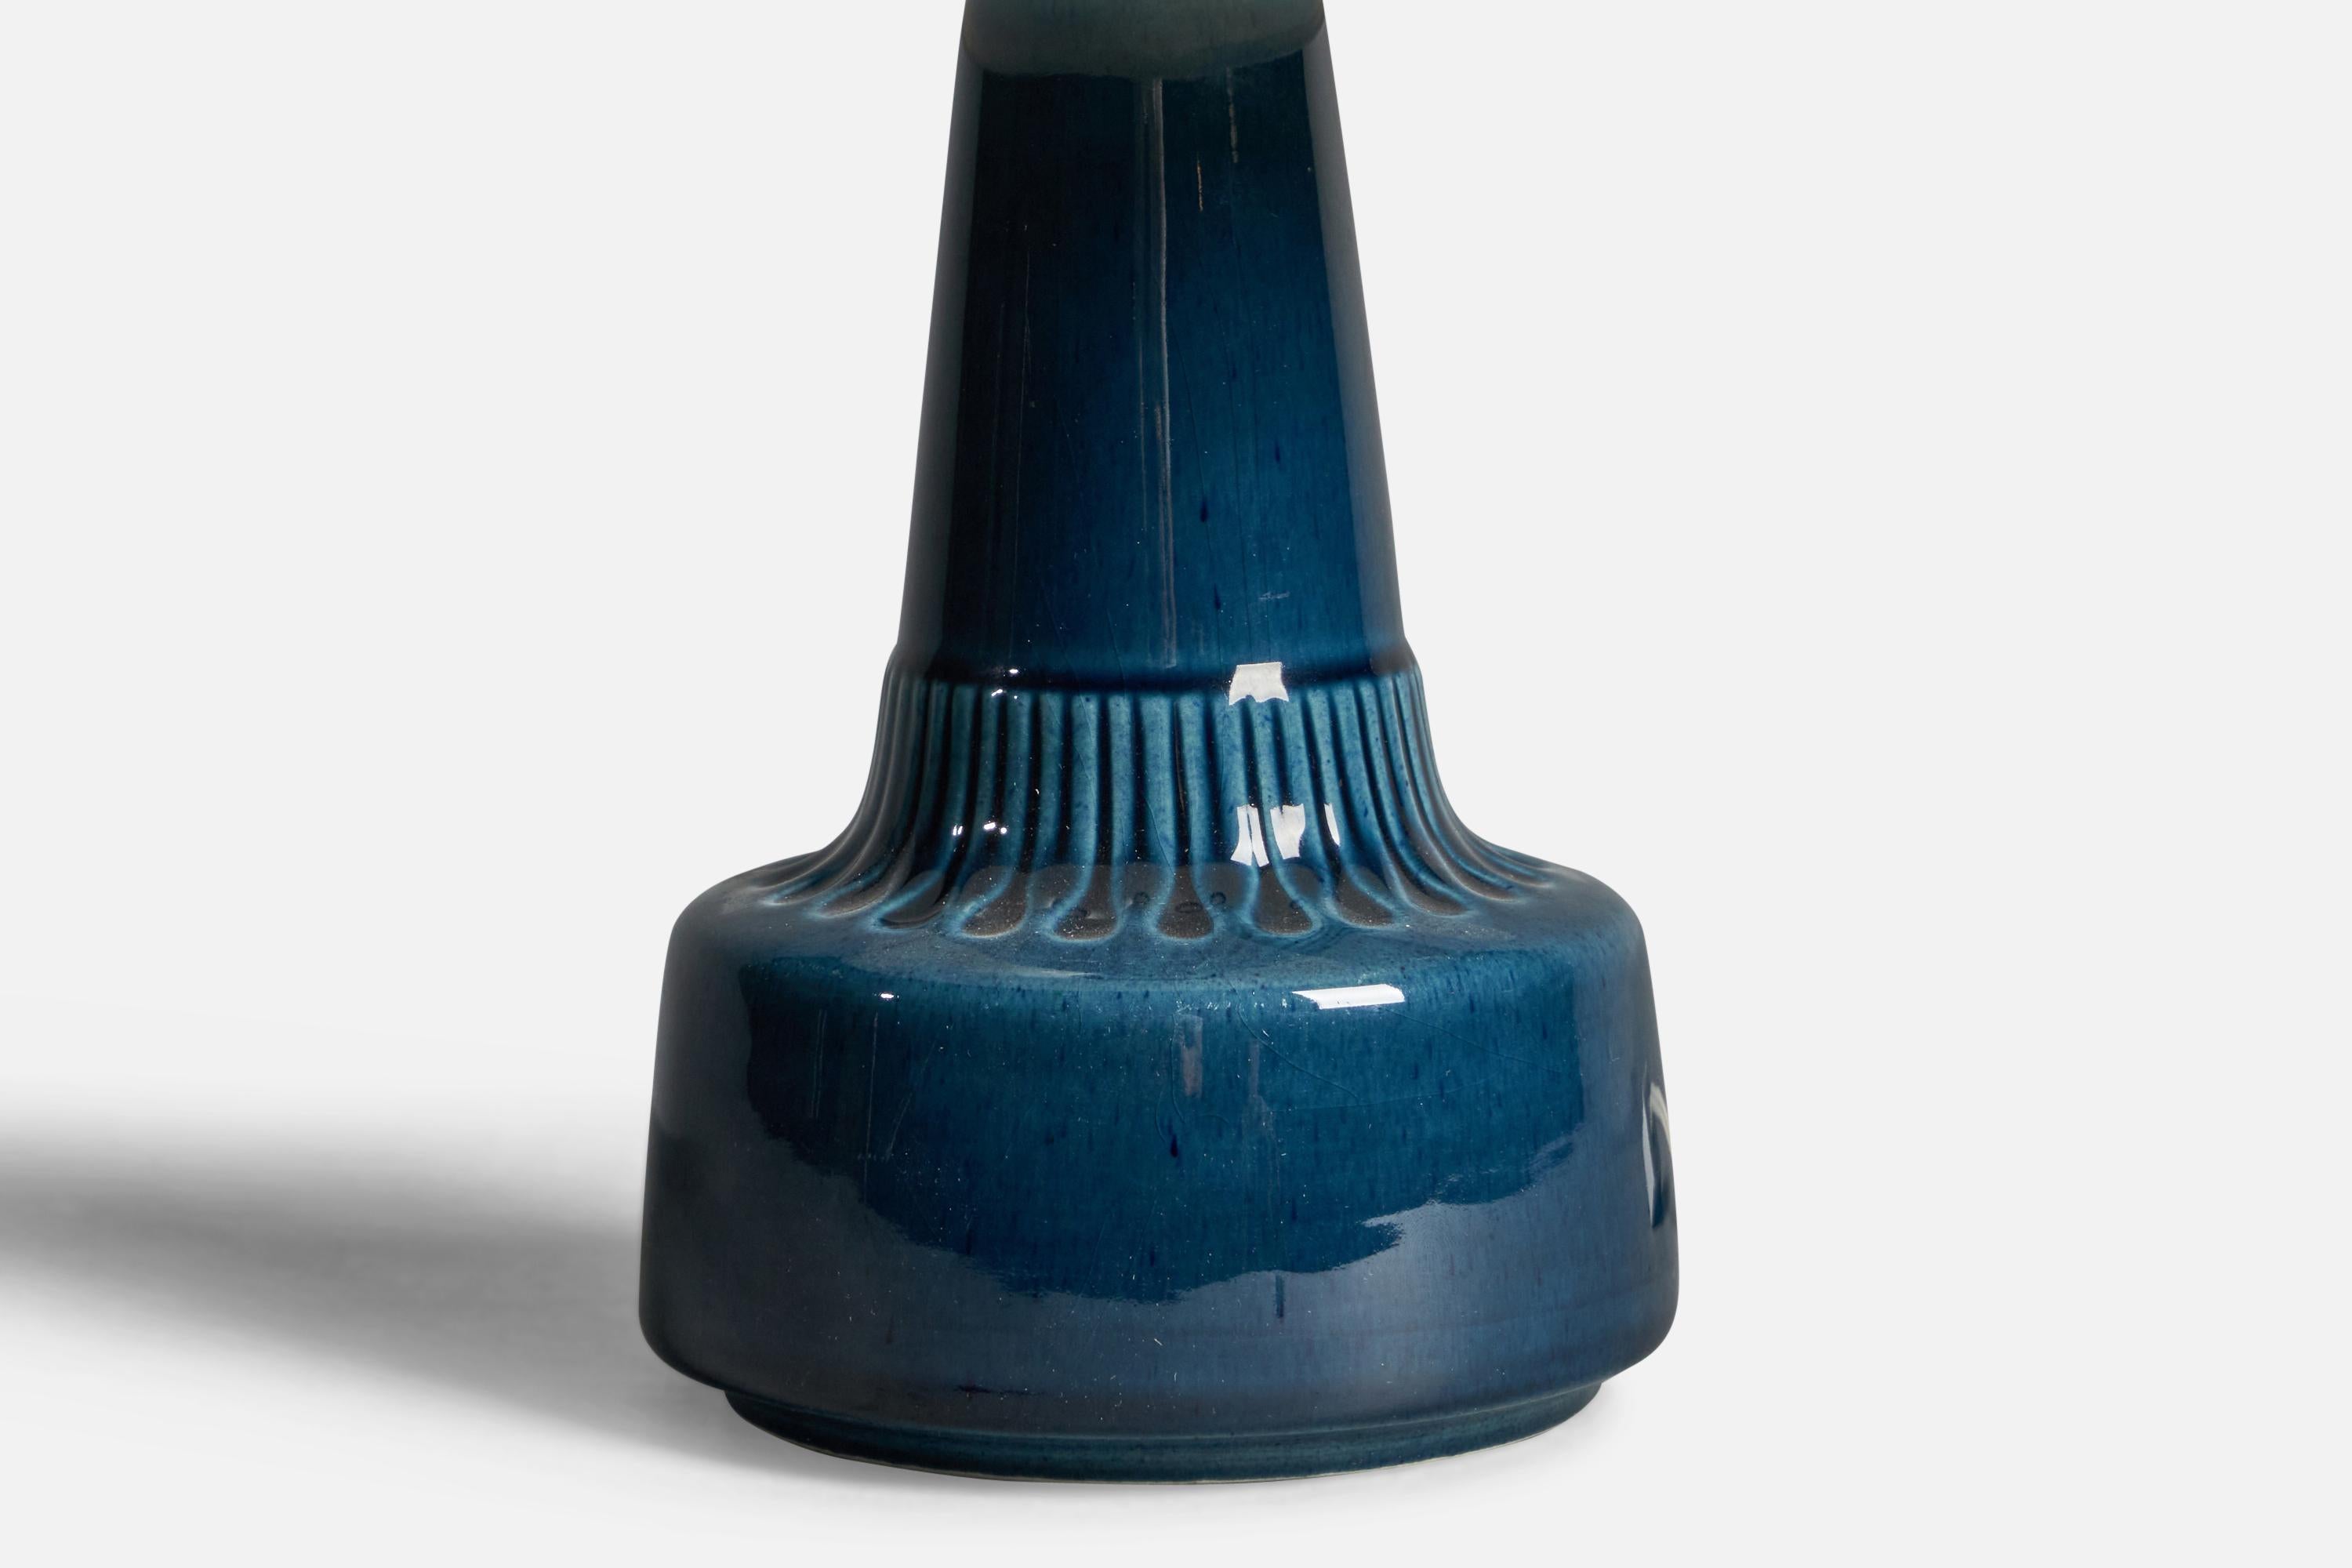 Lampe de table en grès émaillé bleu, conçue et produite par Søholm, Bornholm, Danemark, années 1960.

Dimensions de la lampe (pouces) : 9